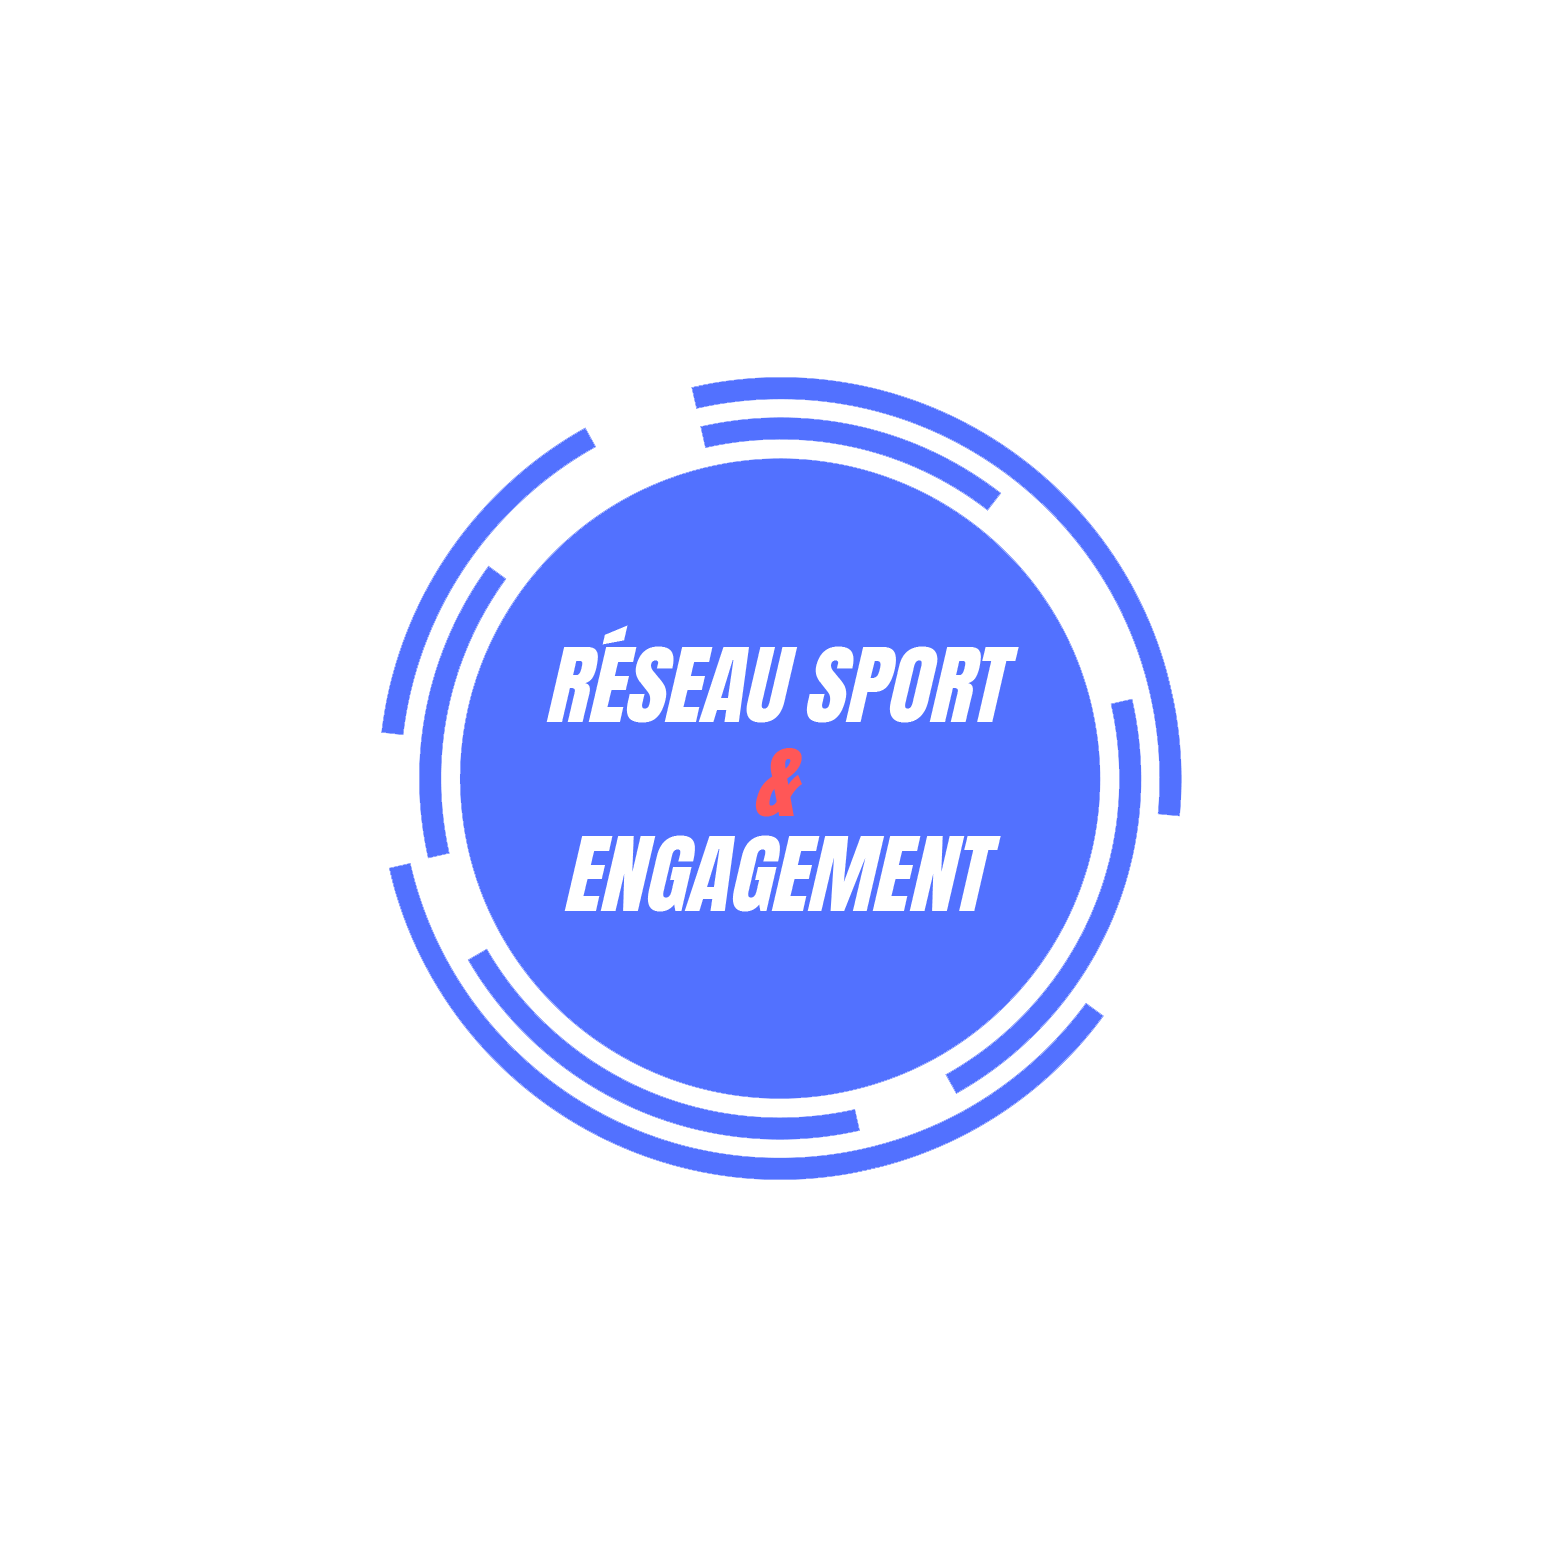 Réseau-Sport-engagement-sans-fond-copy.png